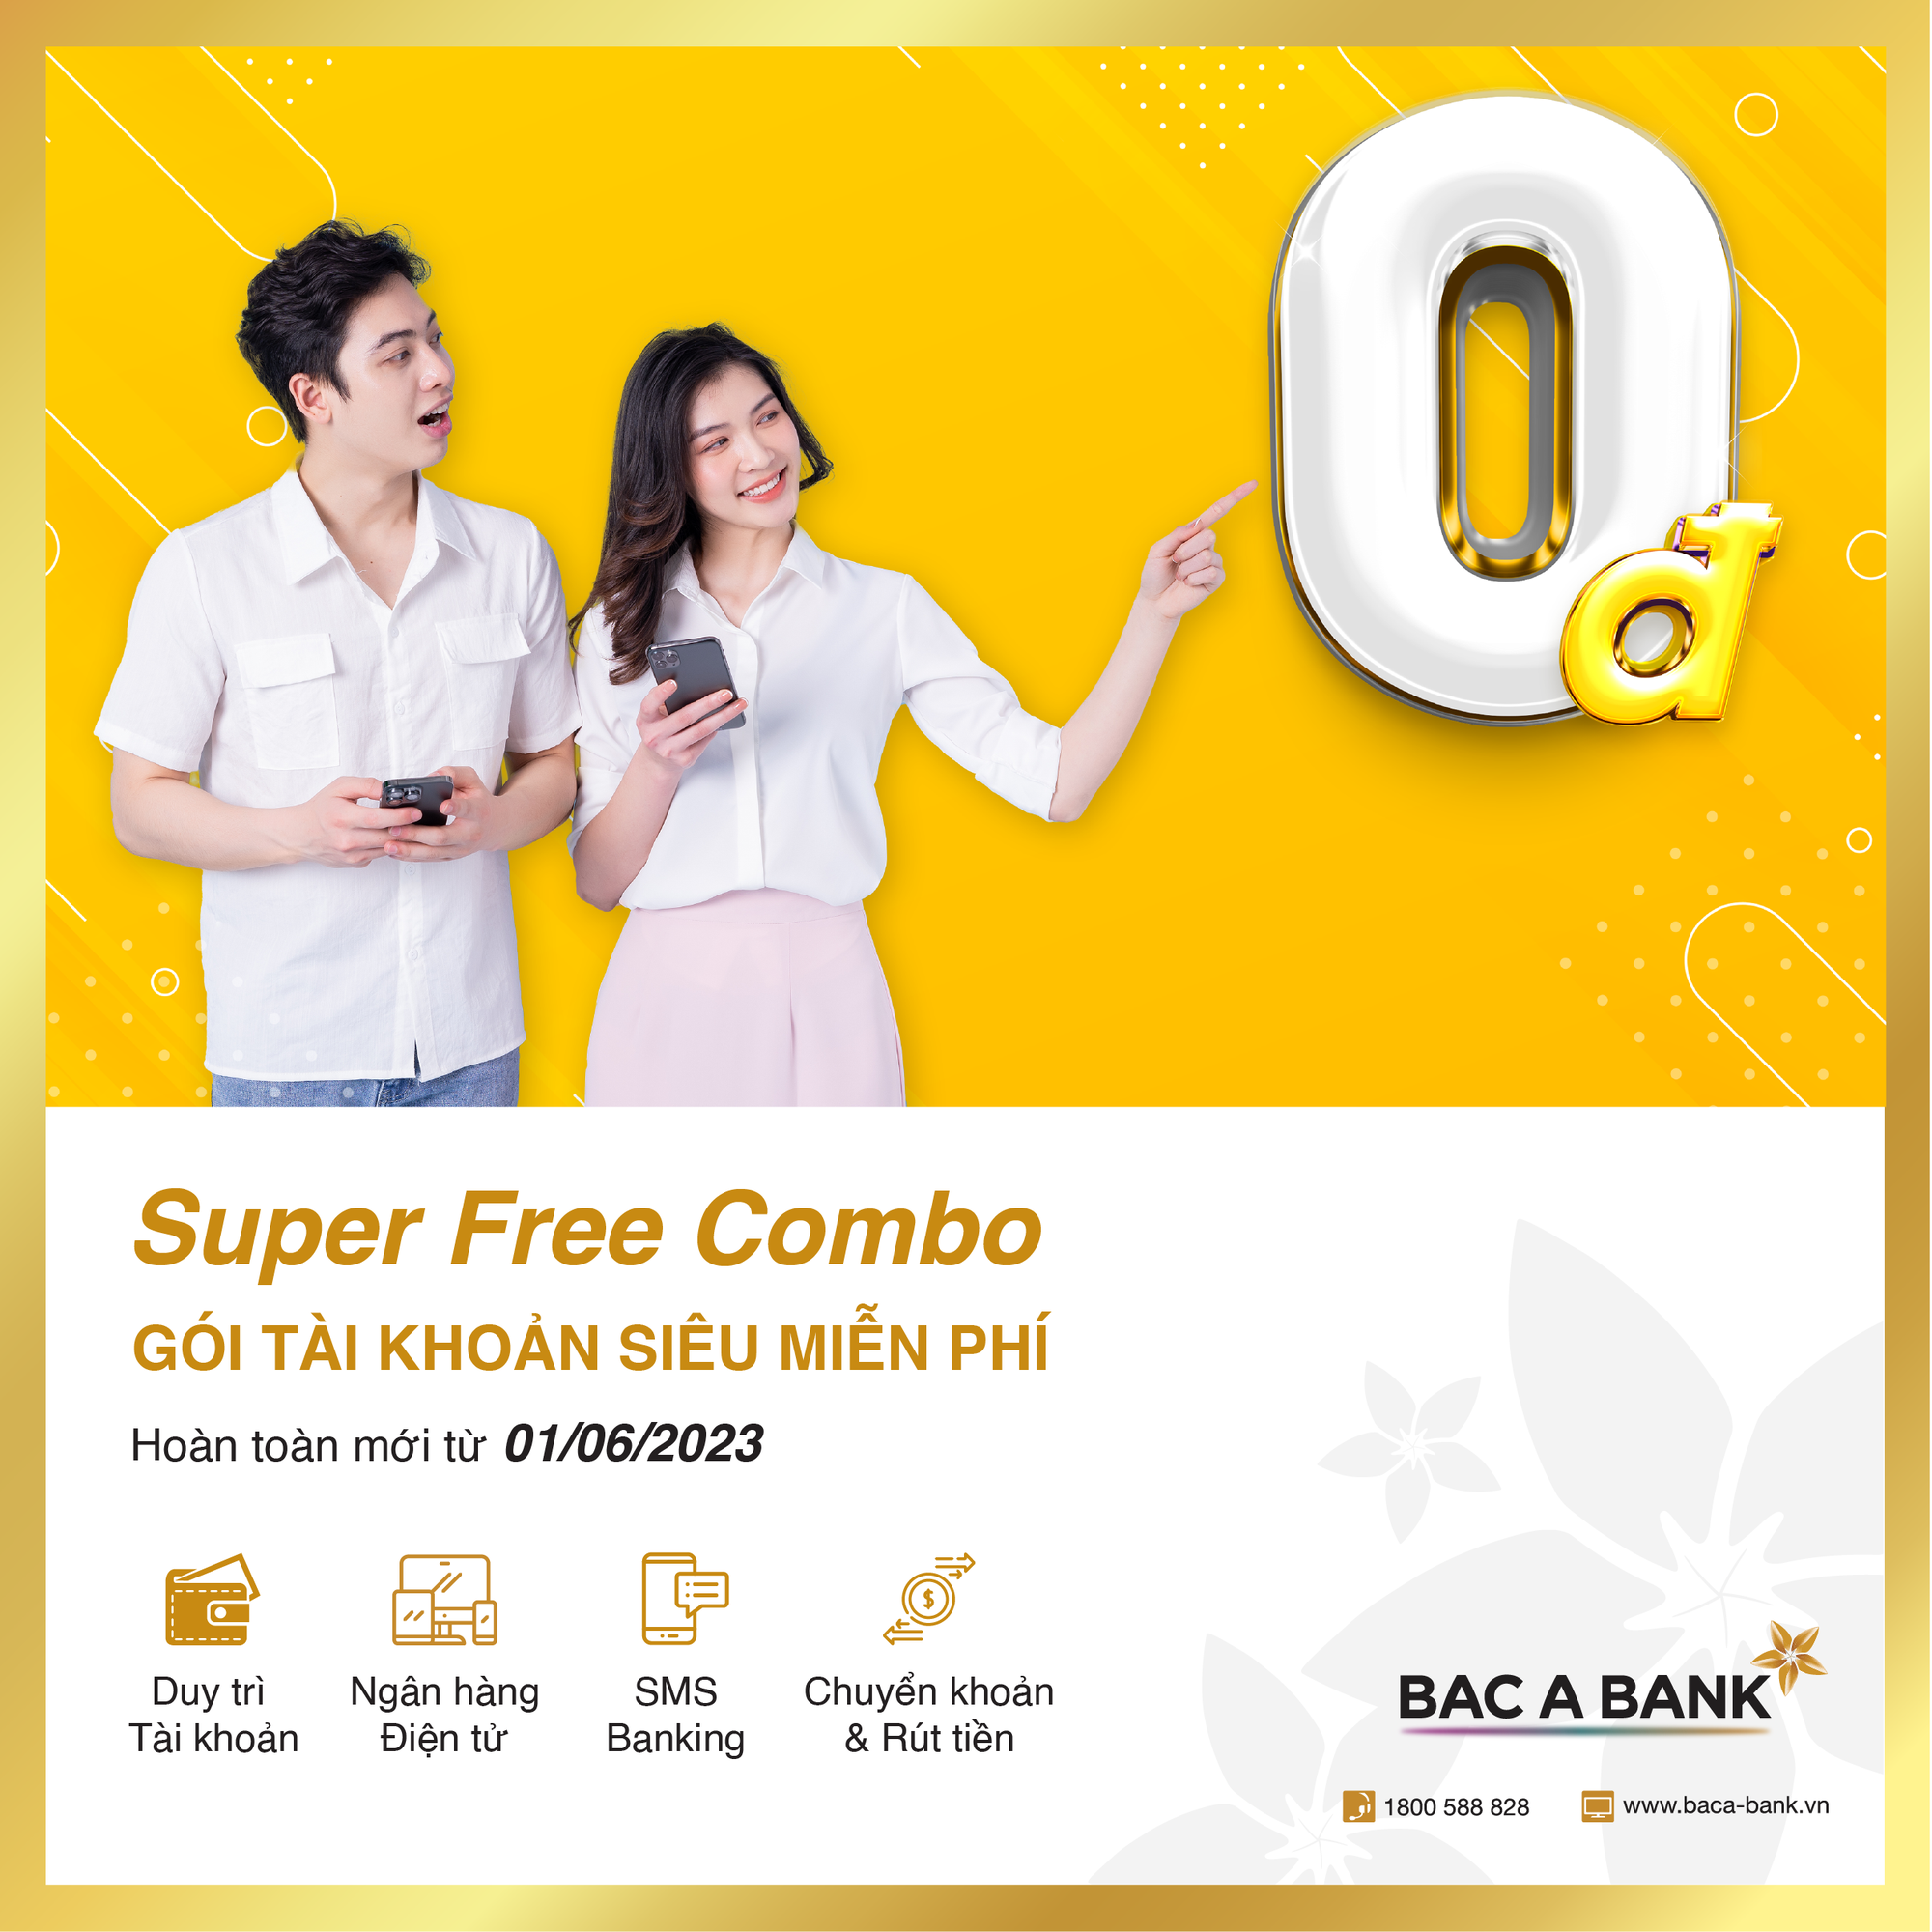 Gói tài khoản siêu miễn phí của BAC A BANK chính thức ra mắt - Ảnh 1.